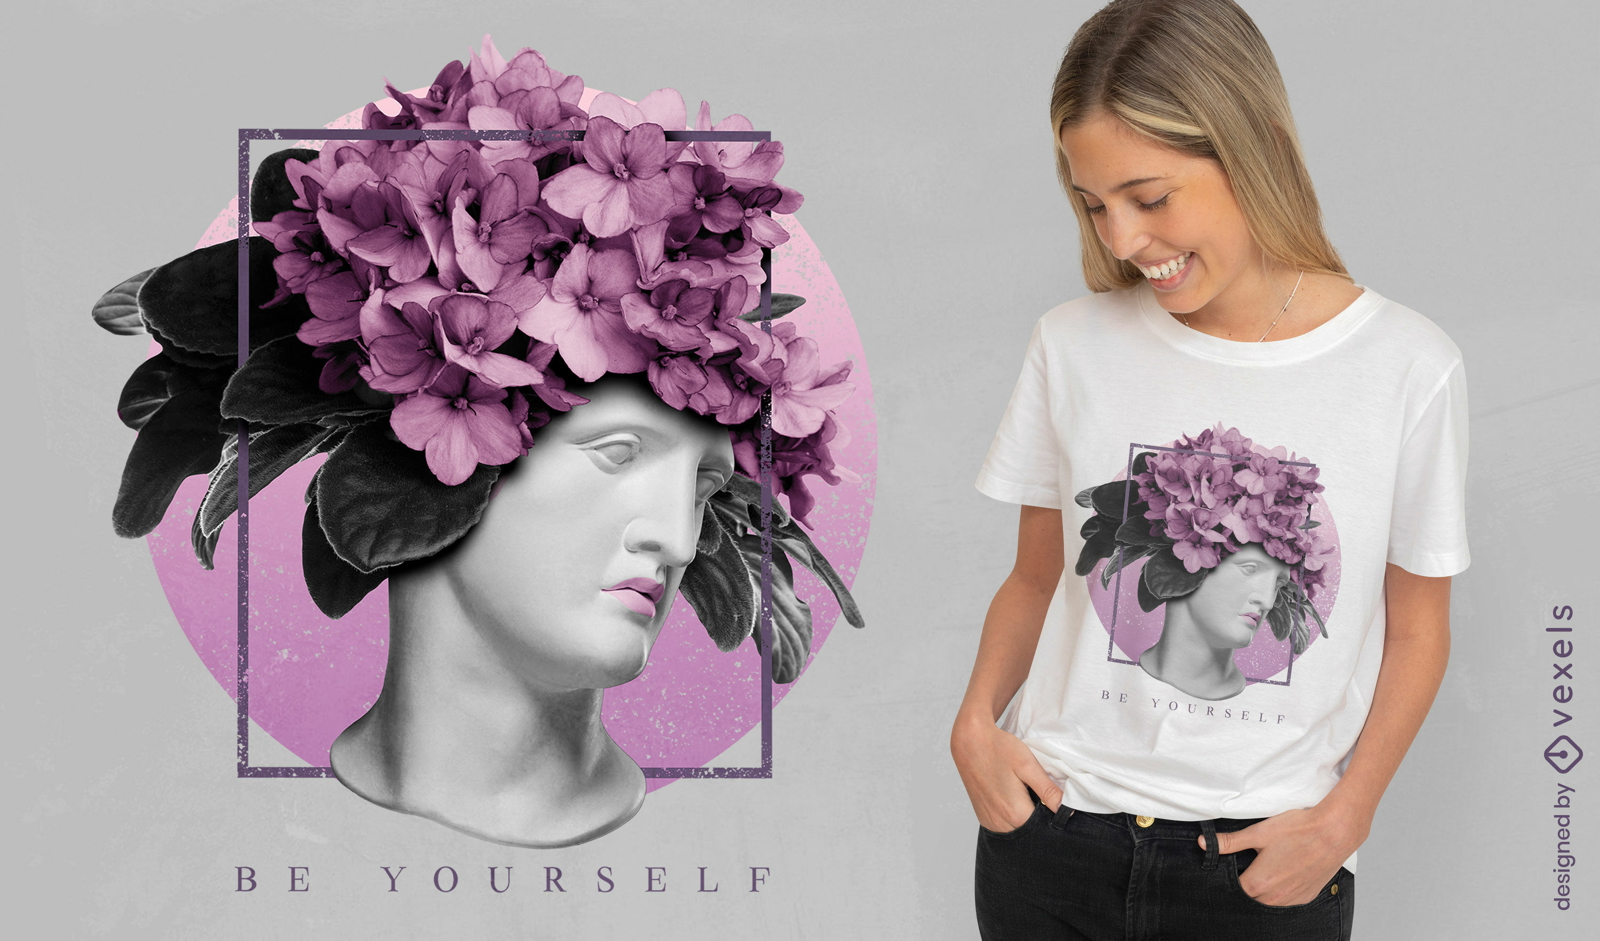 Dise?o de camiseta de estatua con flores en la cabeza.